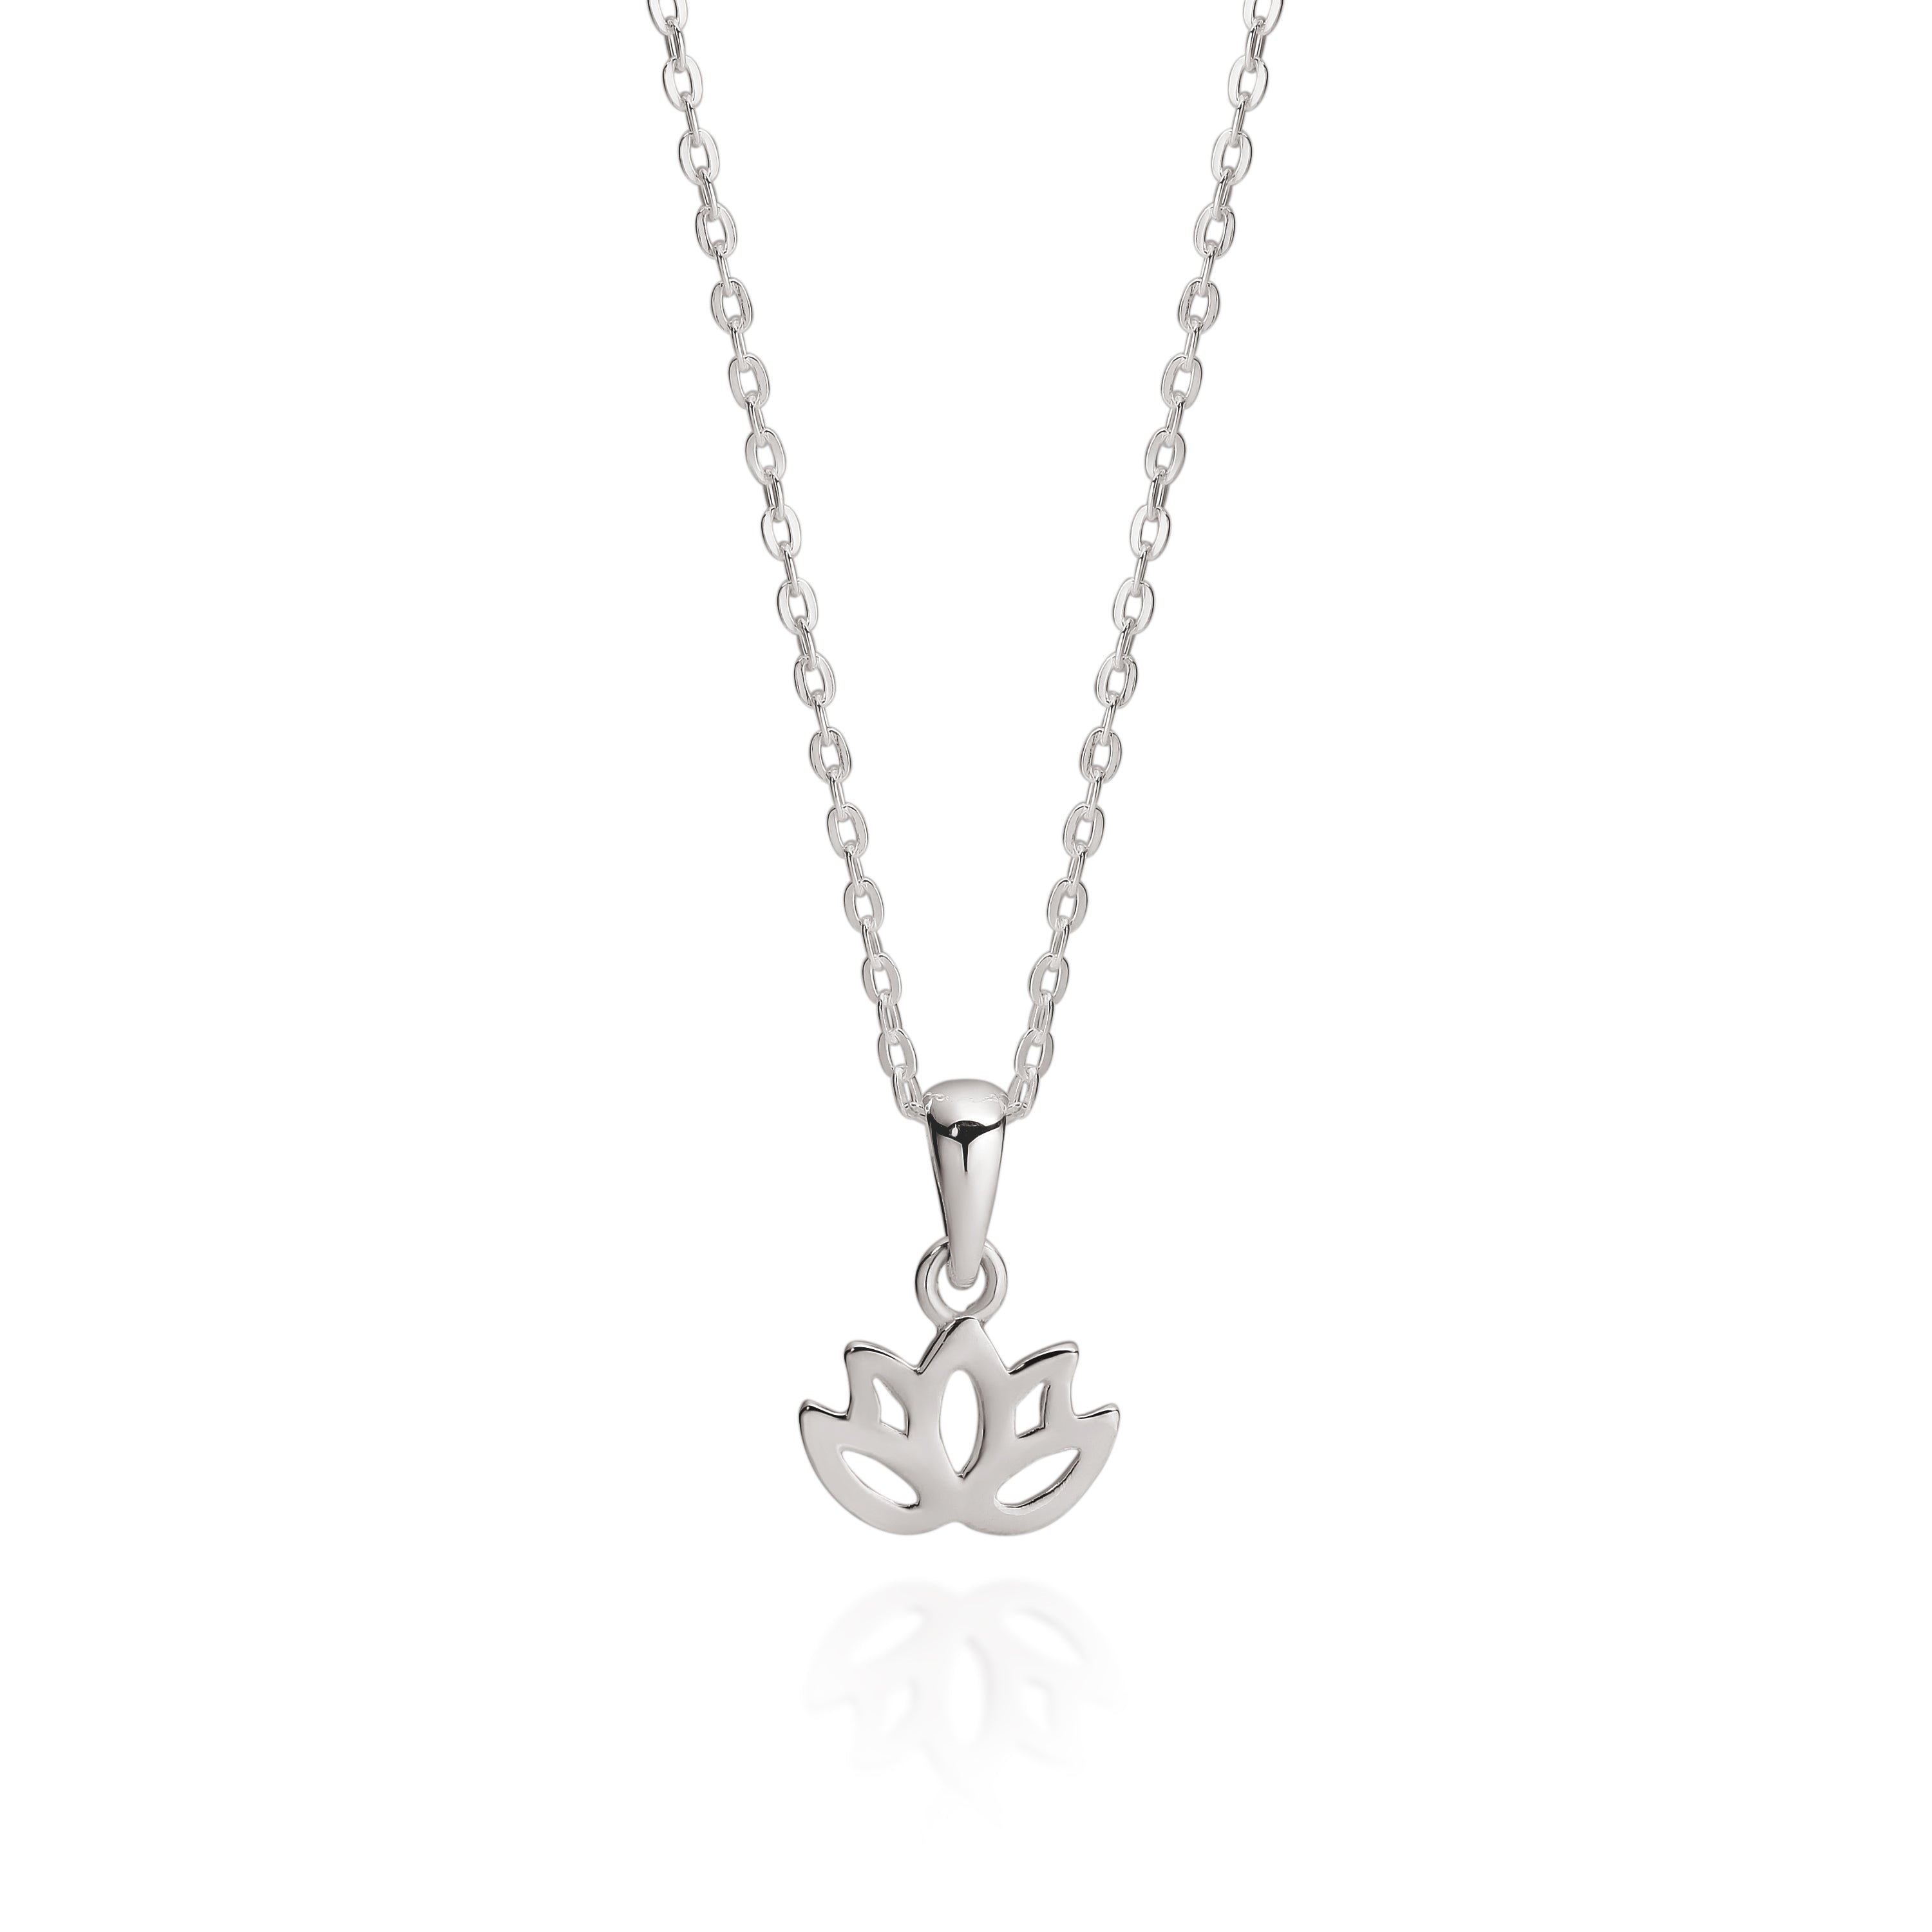 Silver lotus necklace